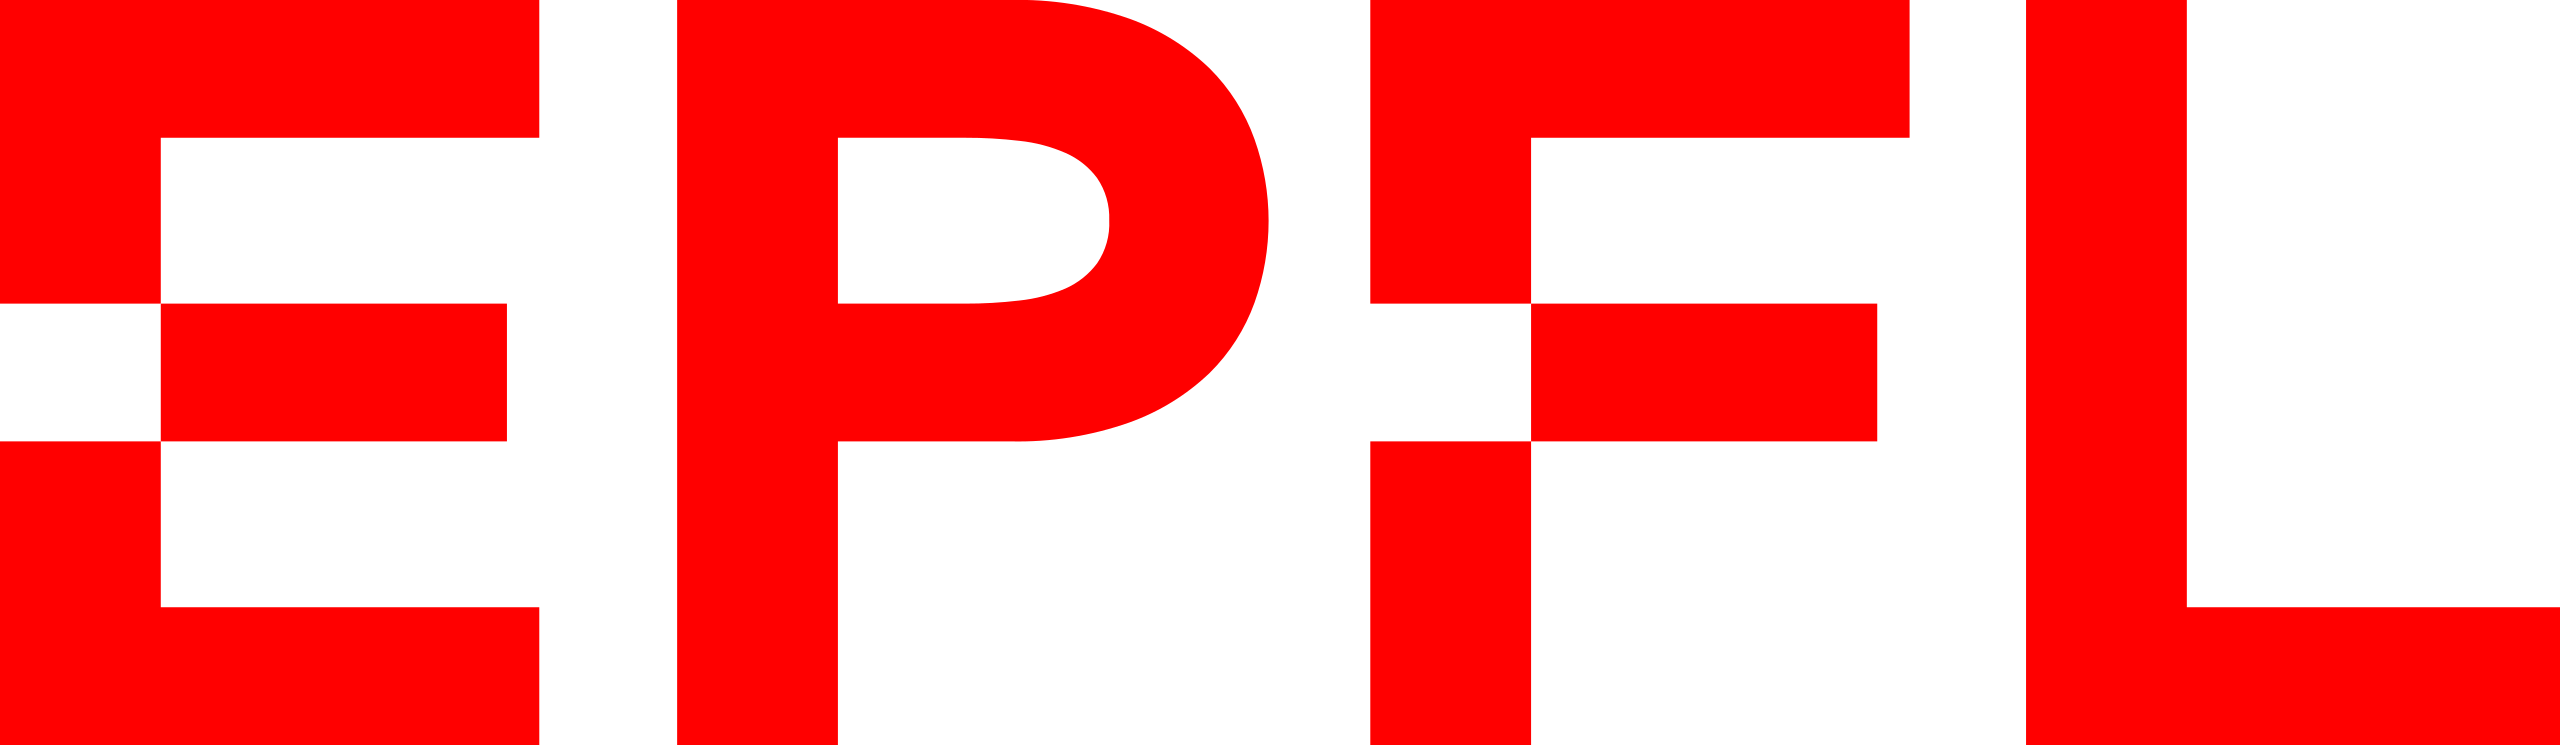 Logo EPFL, Ecole polytechnique fédérale de Lausanne